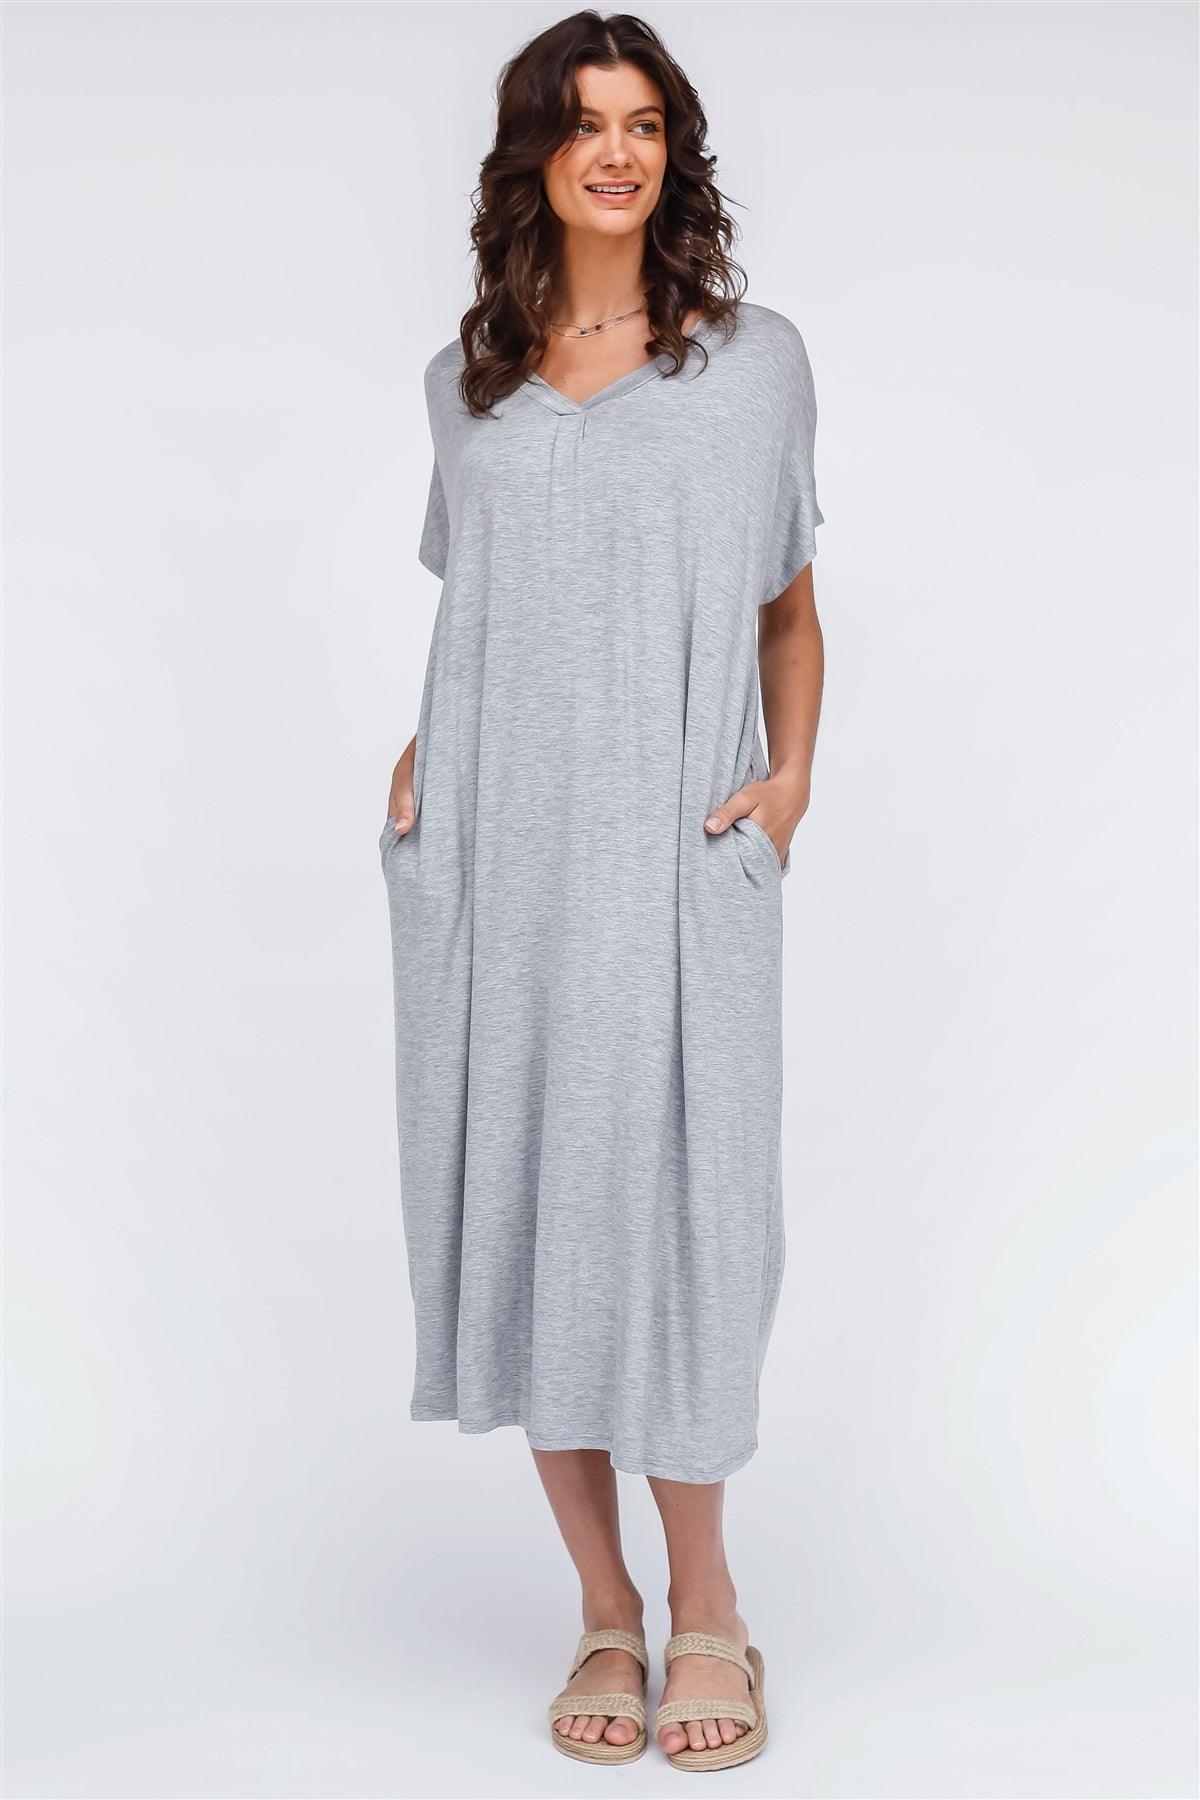 Heather Grey V-Neck Short Sleeve Midi Dress /1-1-1